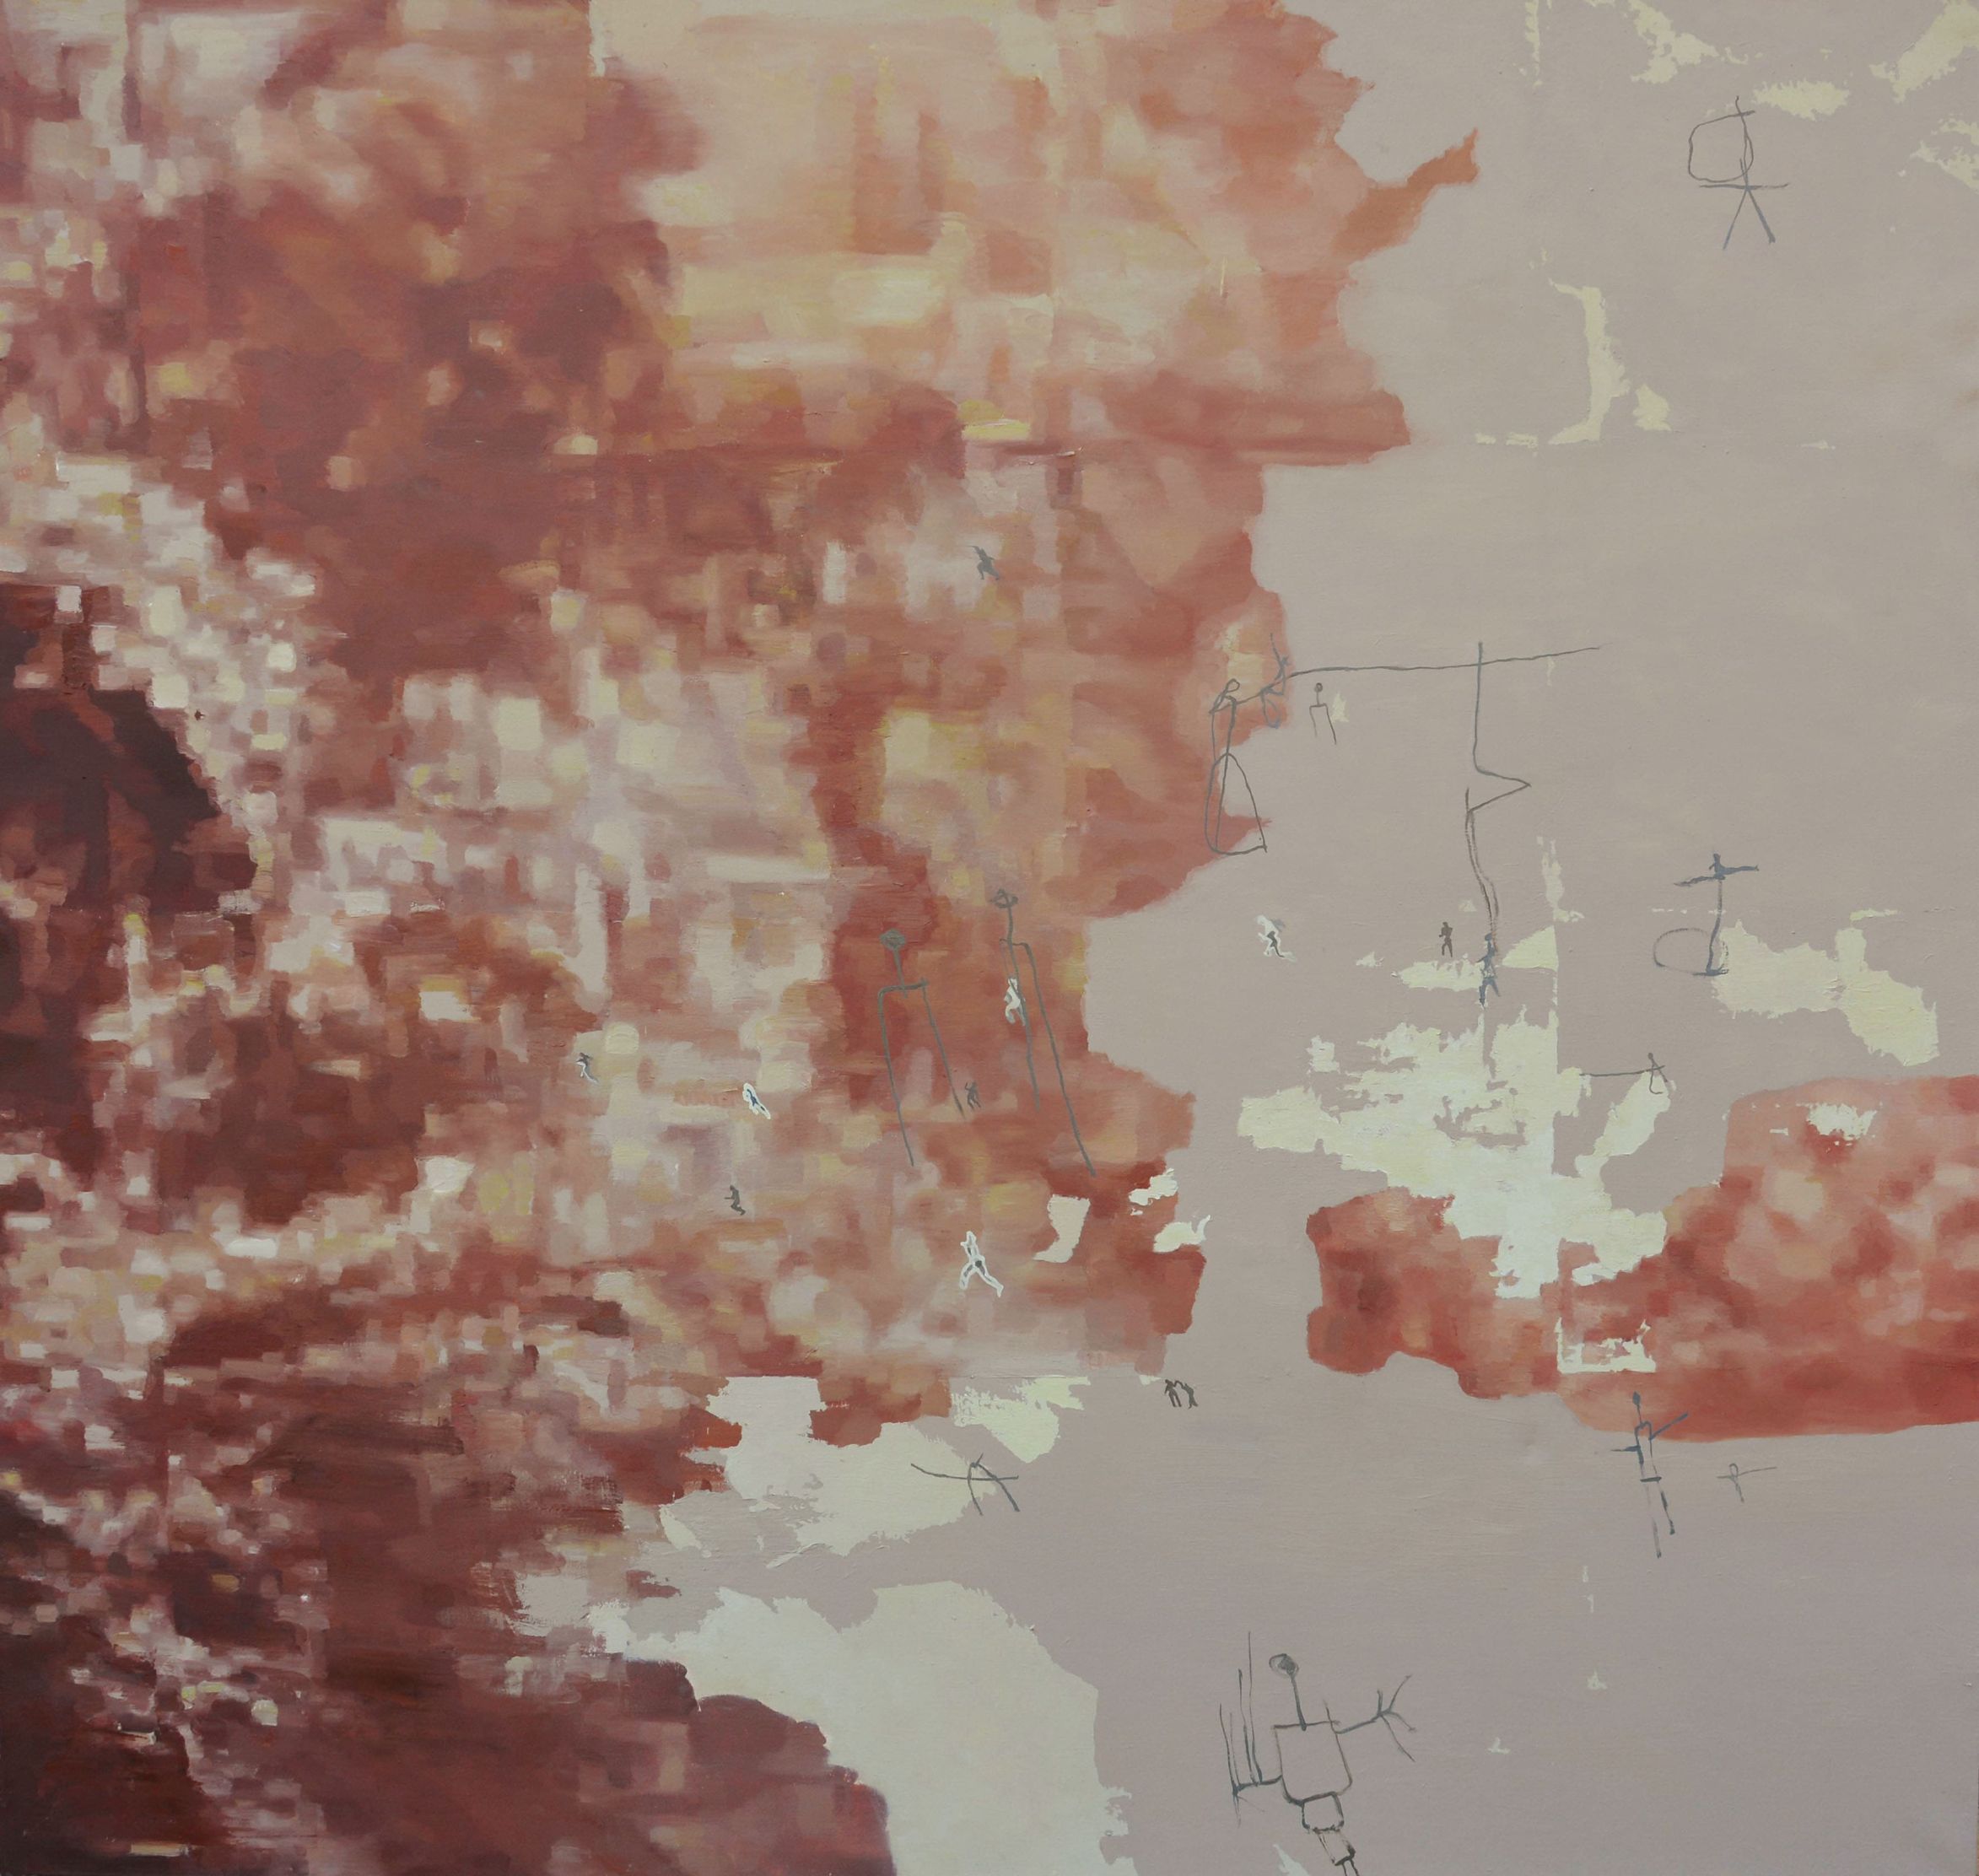 Votlina prednikov, 2015, olje na platno, 180 x 170 cm